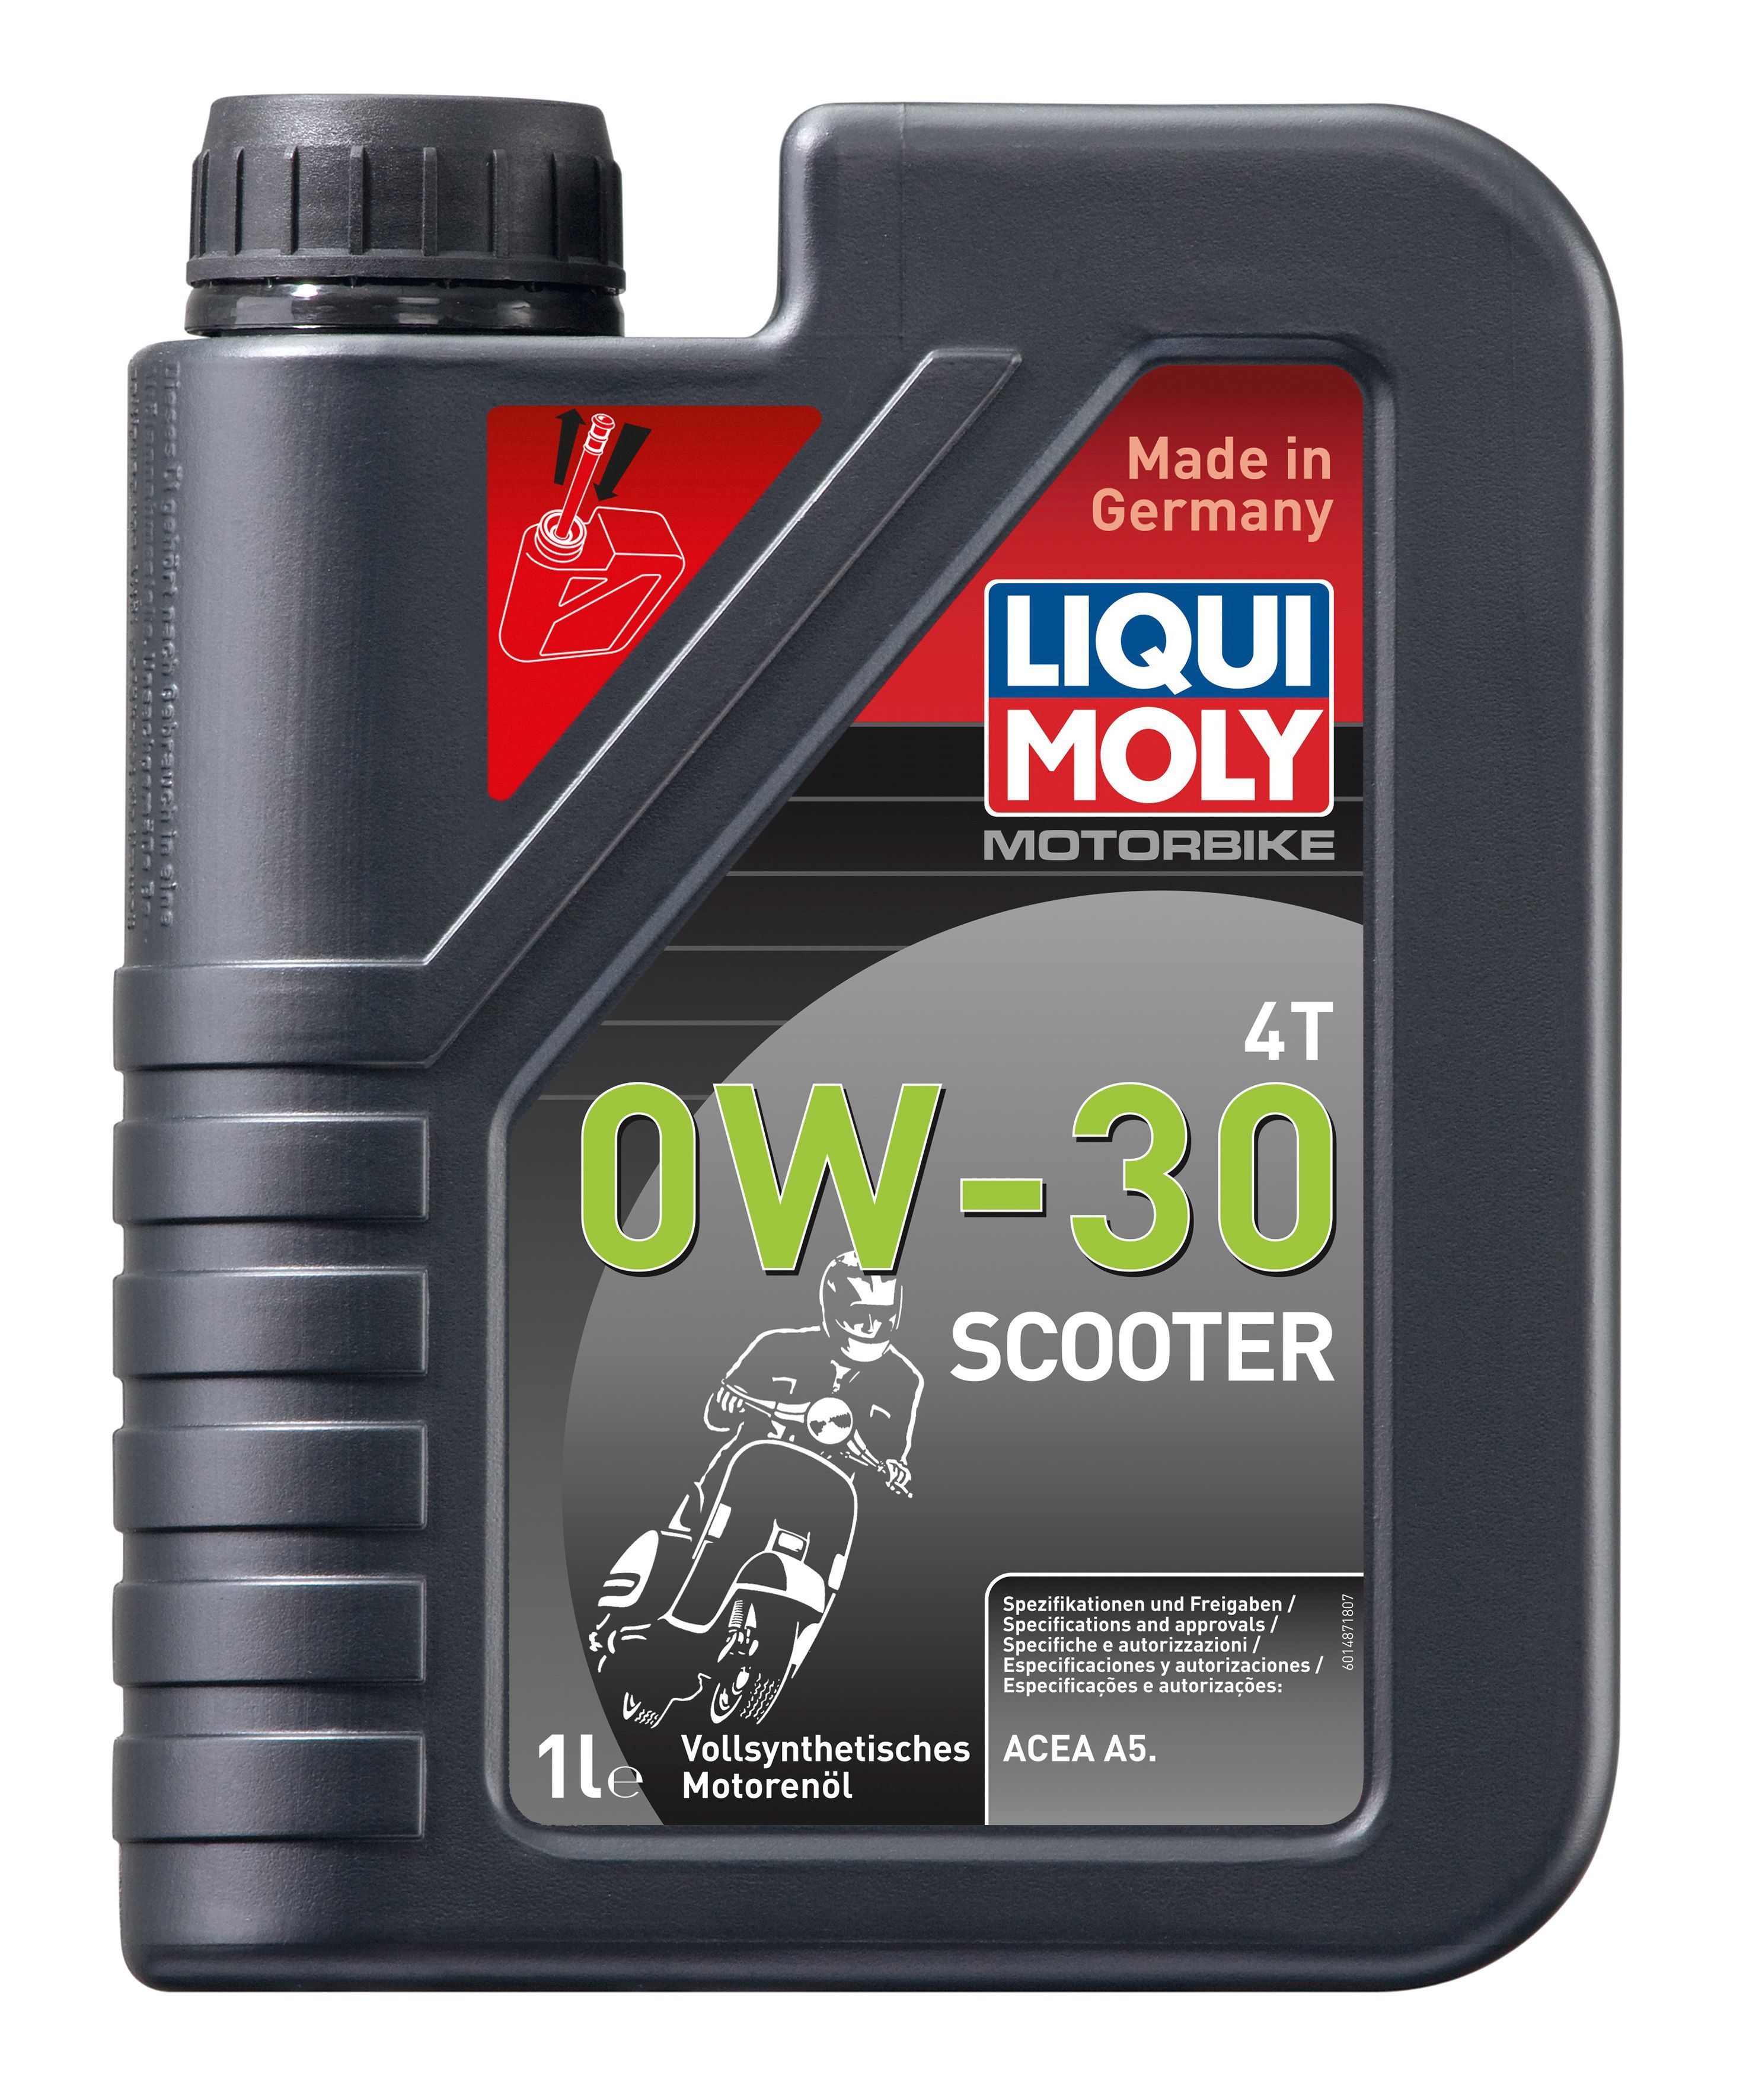 Liqui Moly expondrá su nuevo aceite para scooters en Intermot